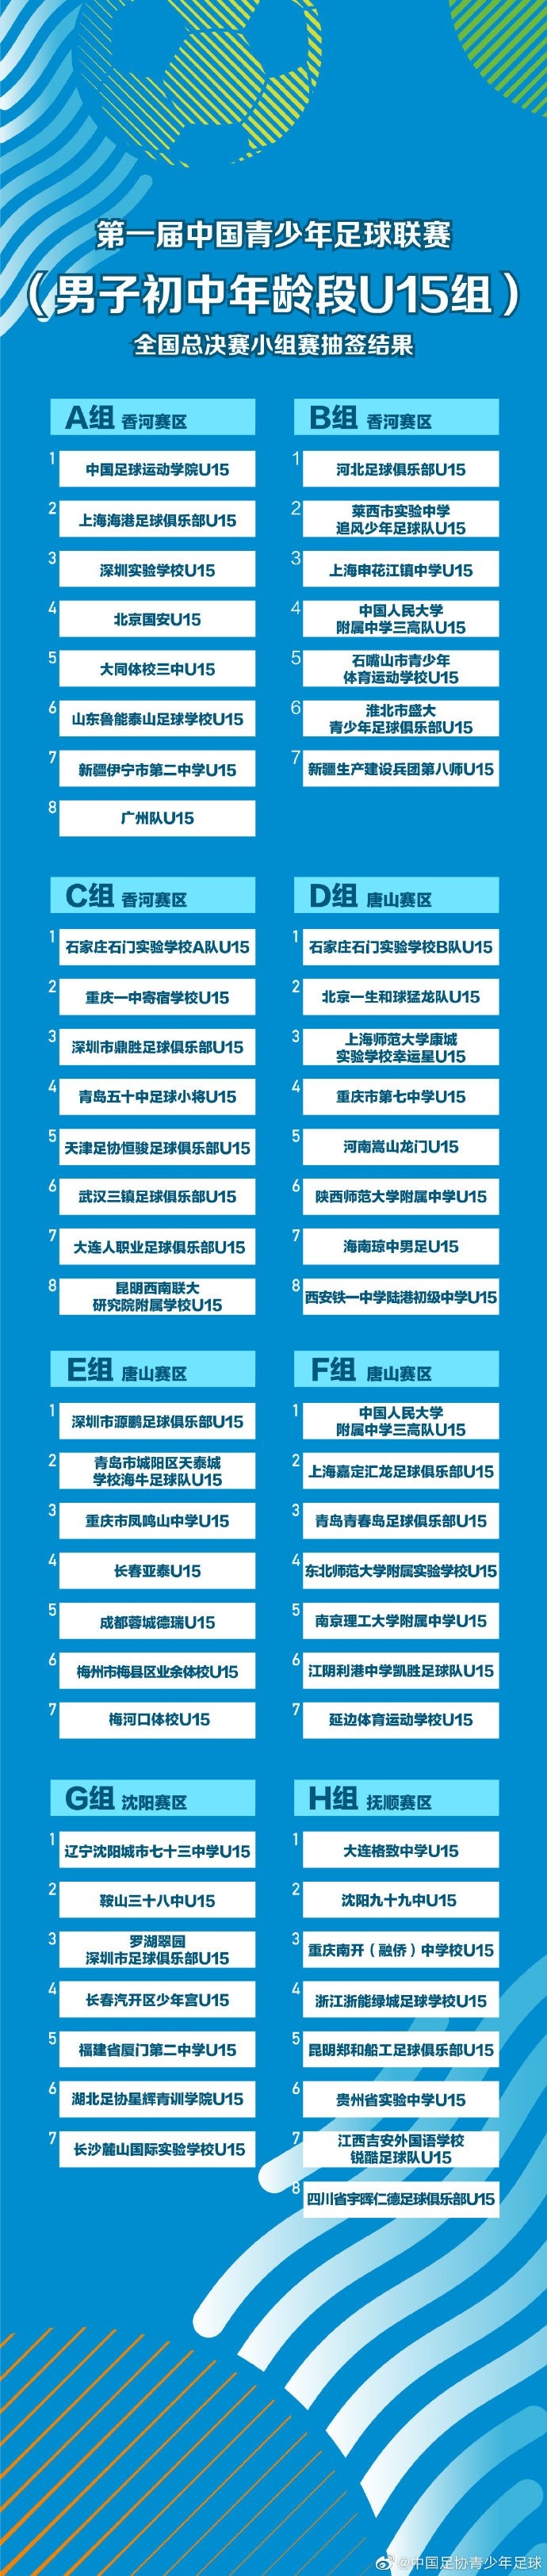 中国青少年足球联赛全国总决赛小组赛抽签结果公示